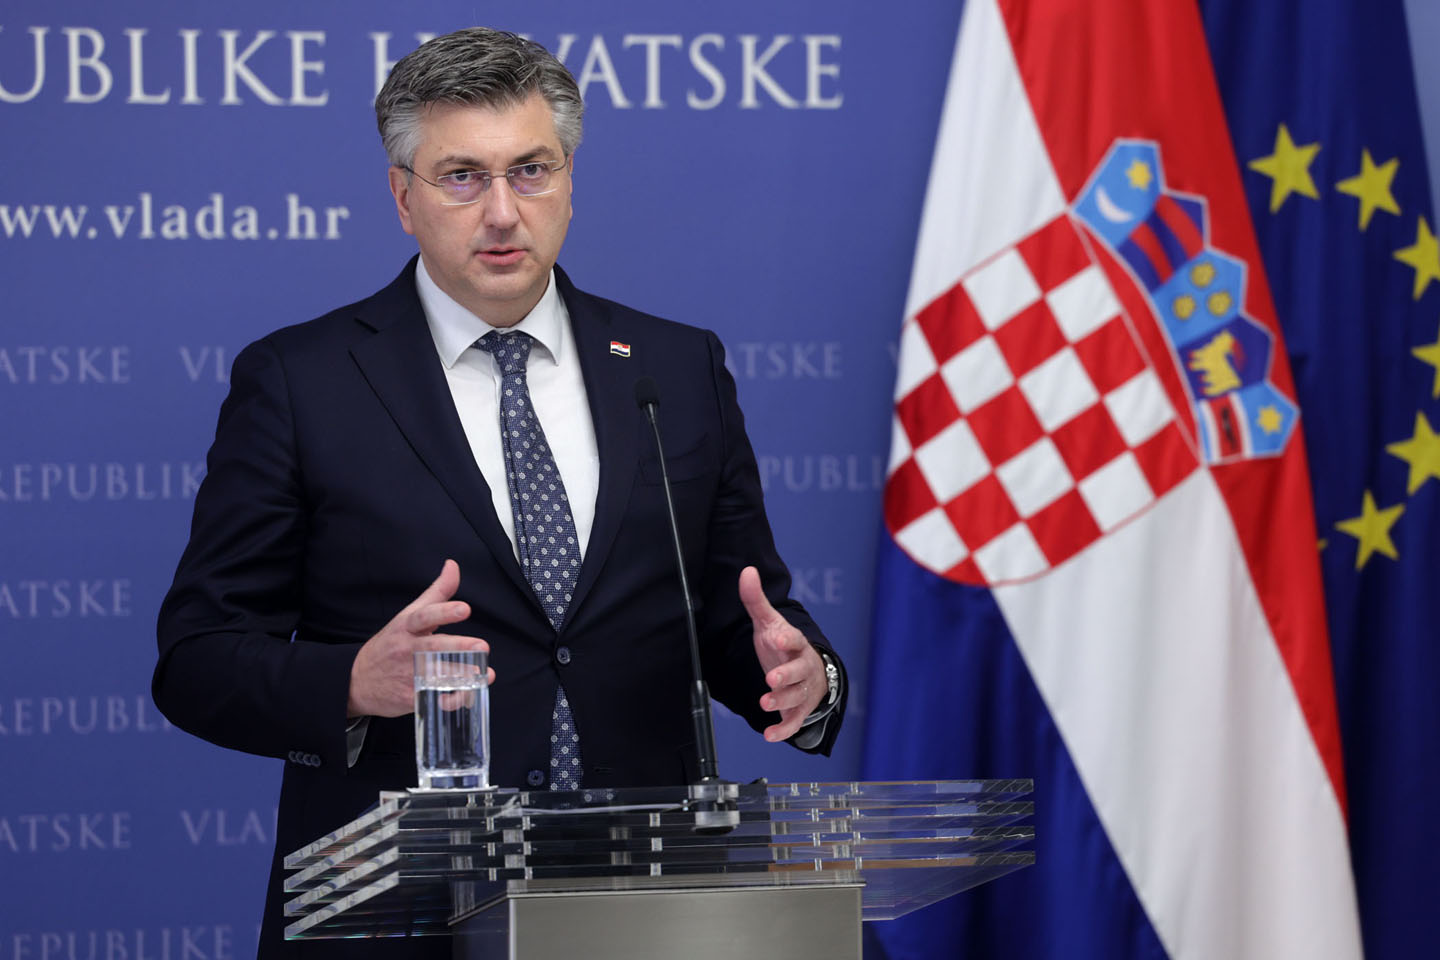 Prvi put sredom: Hrvatska bira između Milanovića i Plenkovića